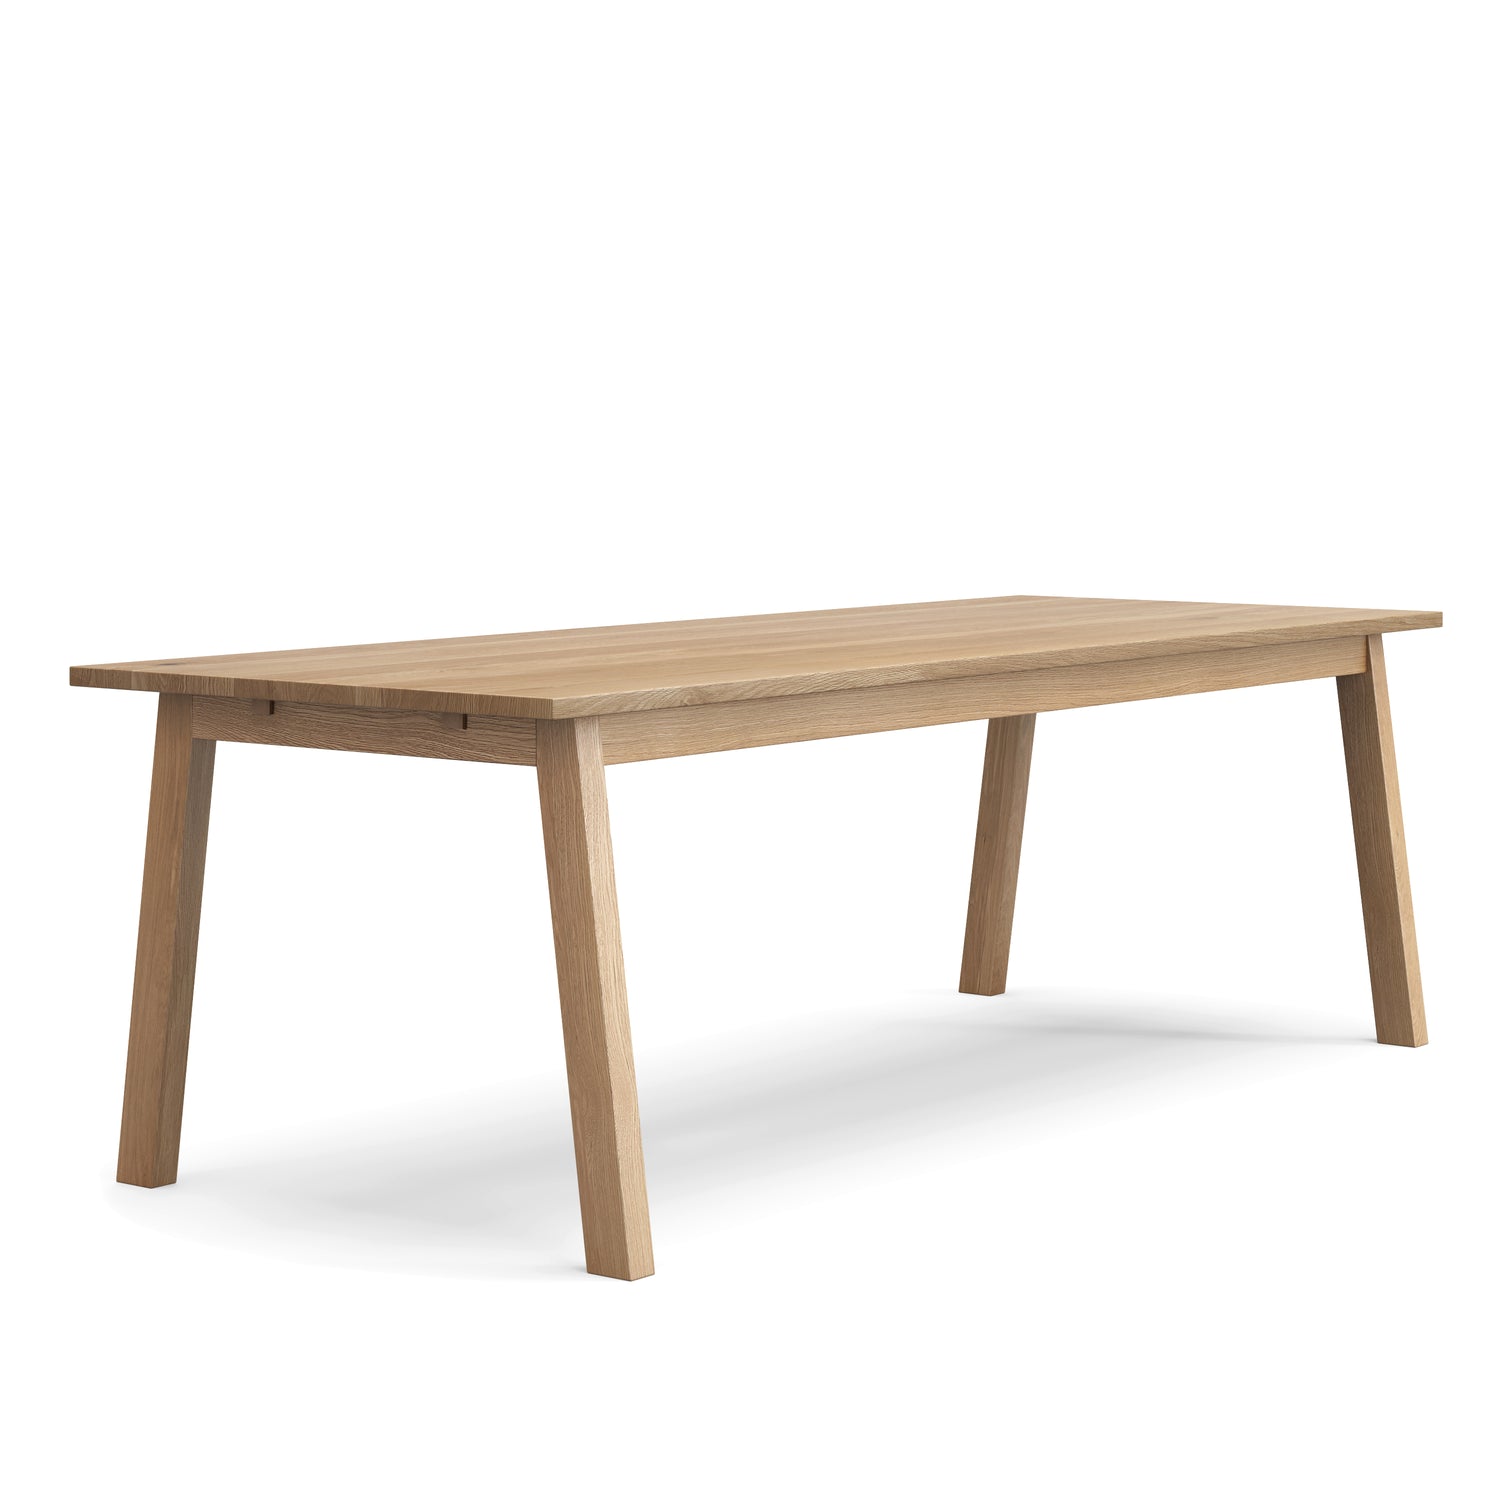 Luft oak table - 96 x 36 in. - 3504